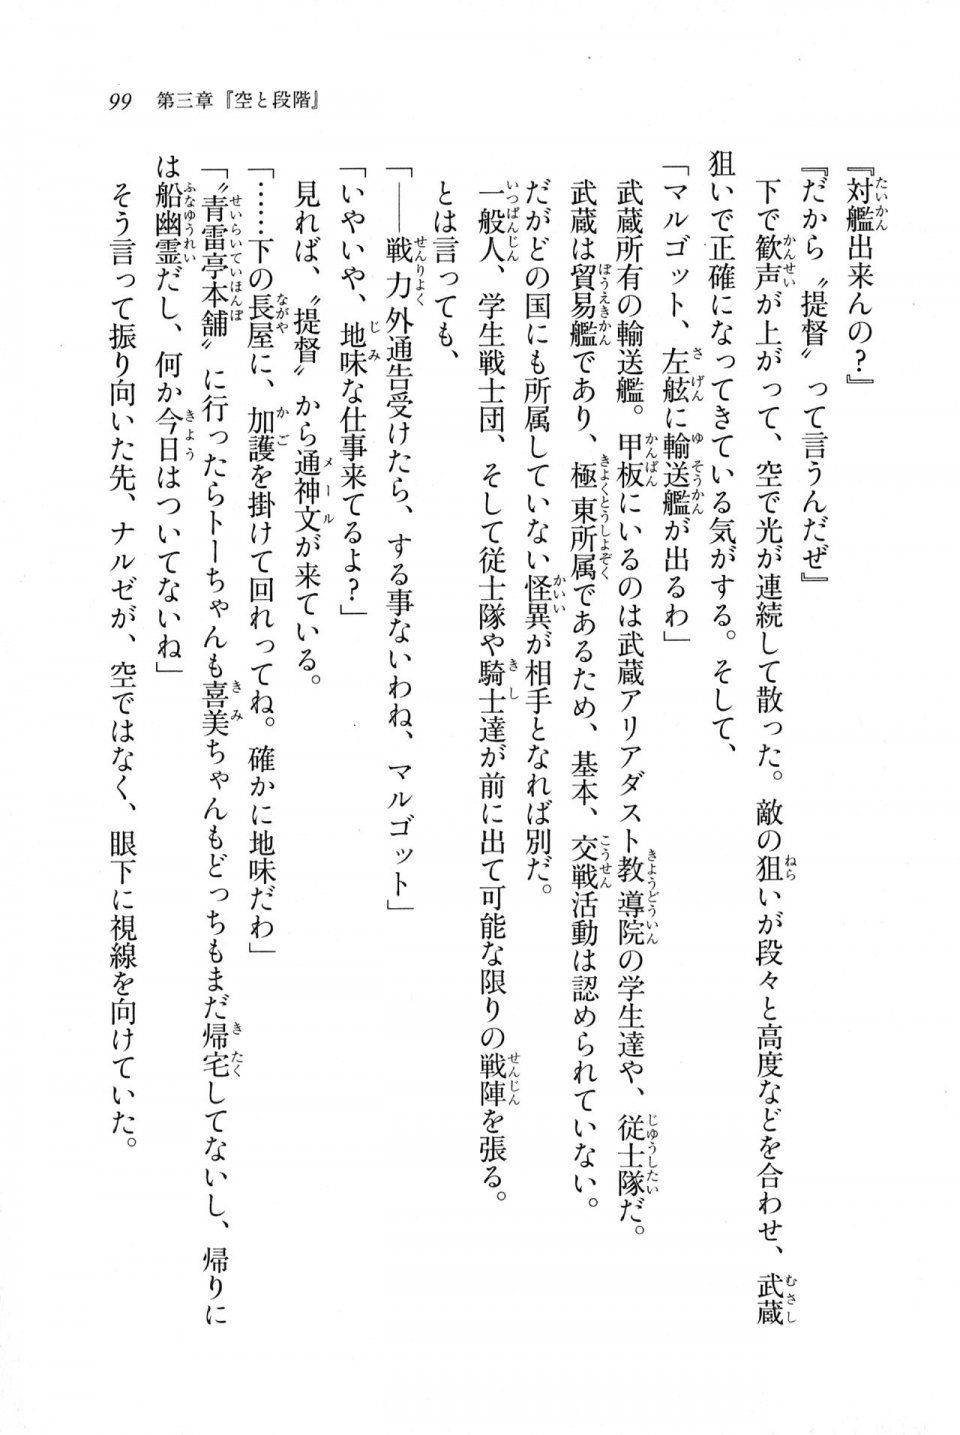 Kyoukai Senjou no Horizon LN Sidestory Vol 1 - Photo #97